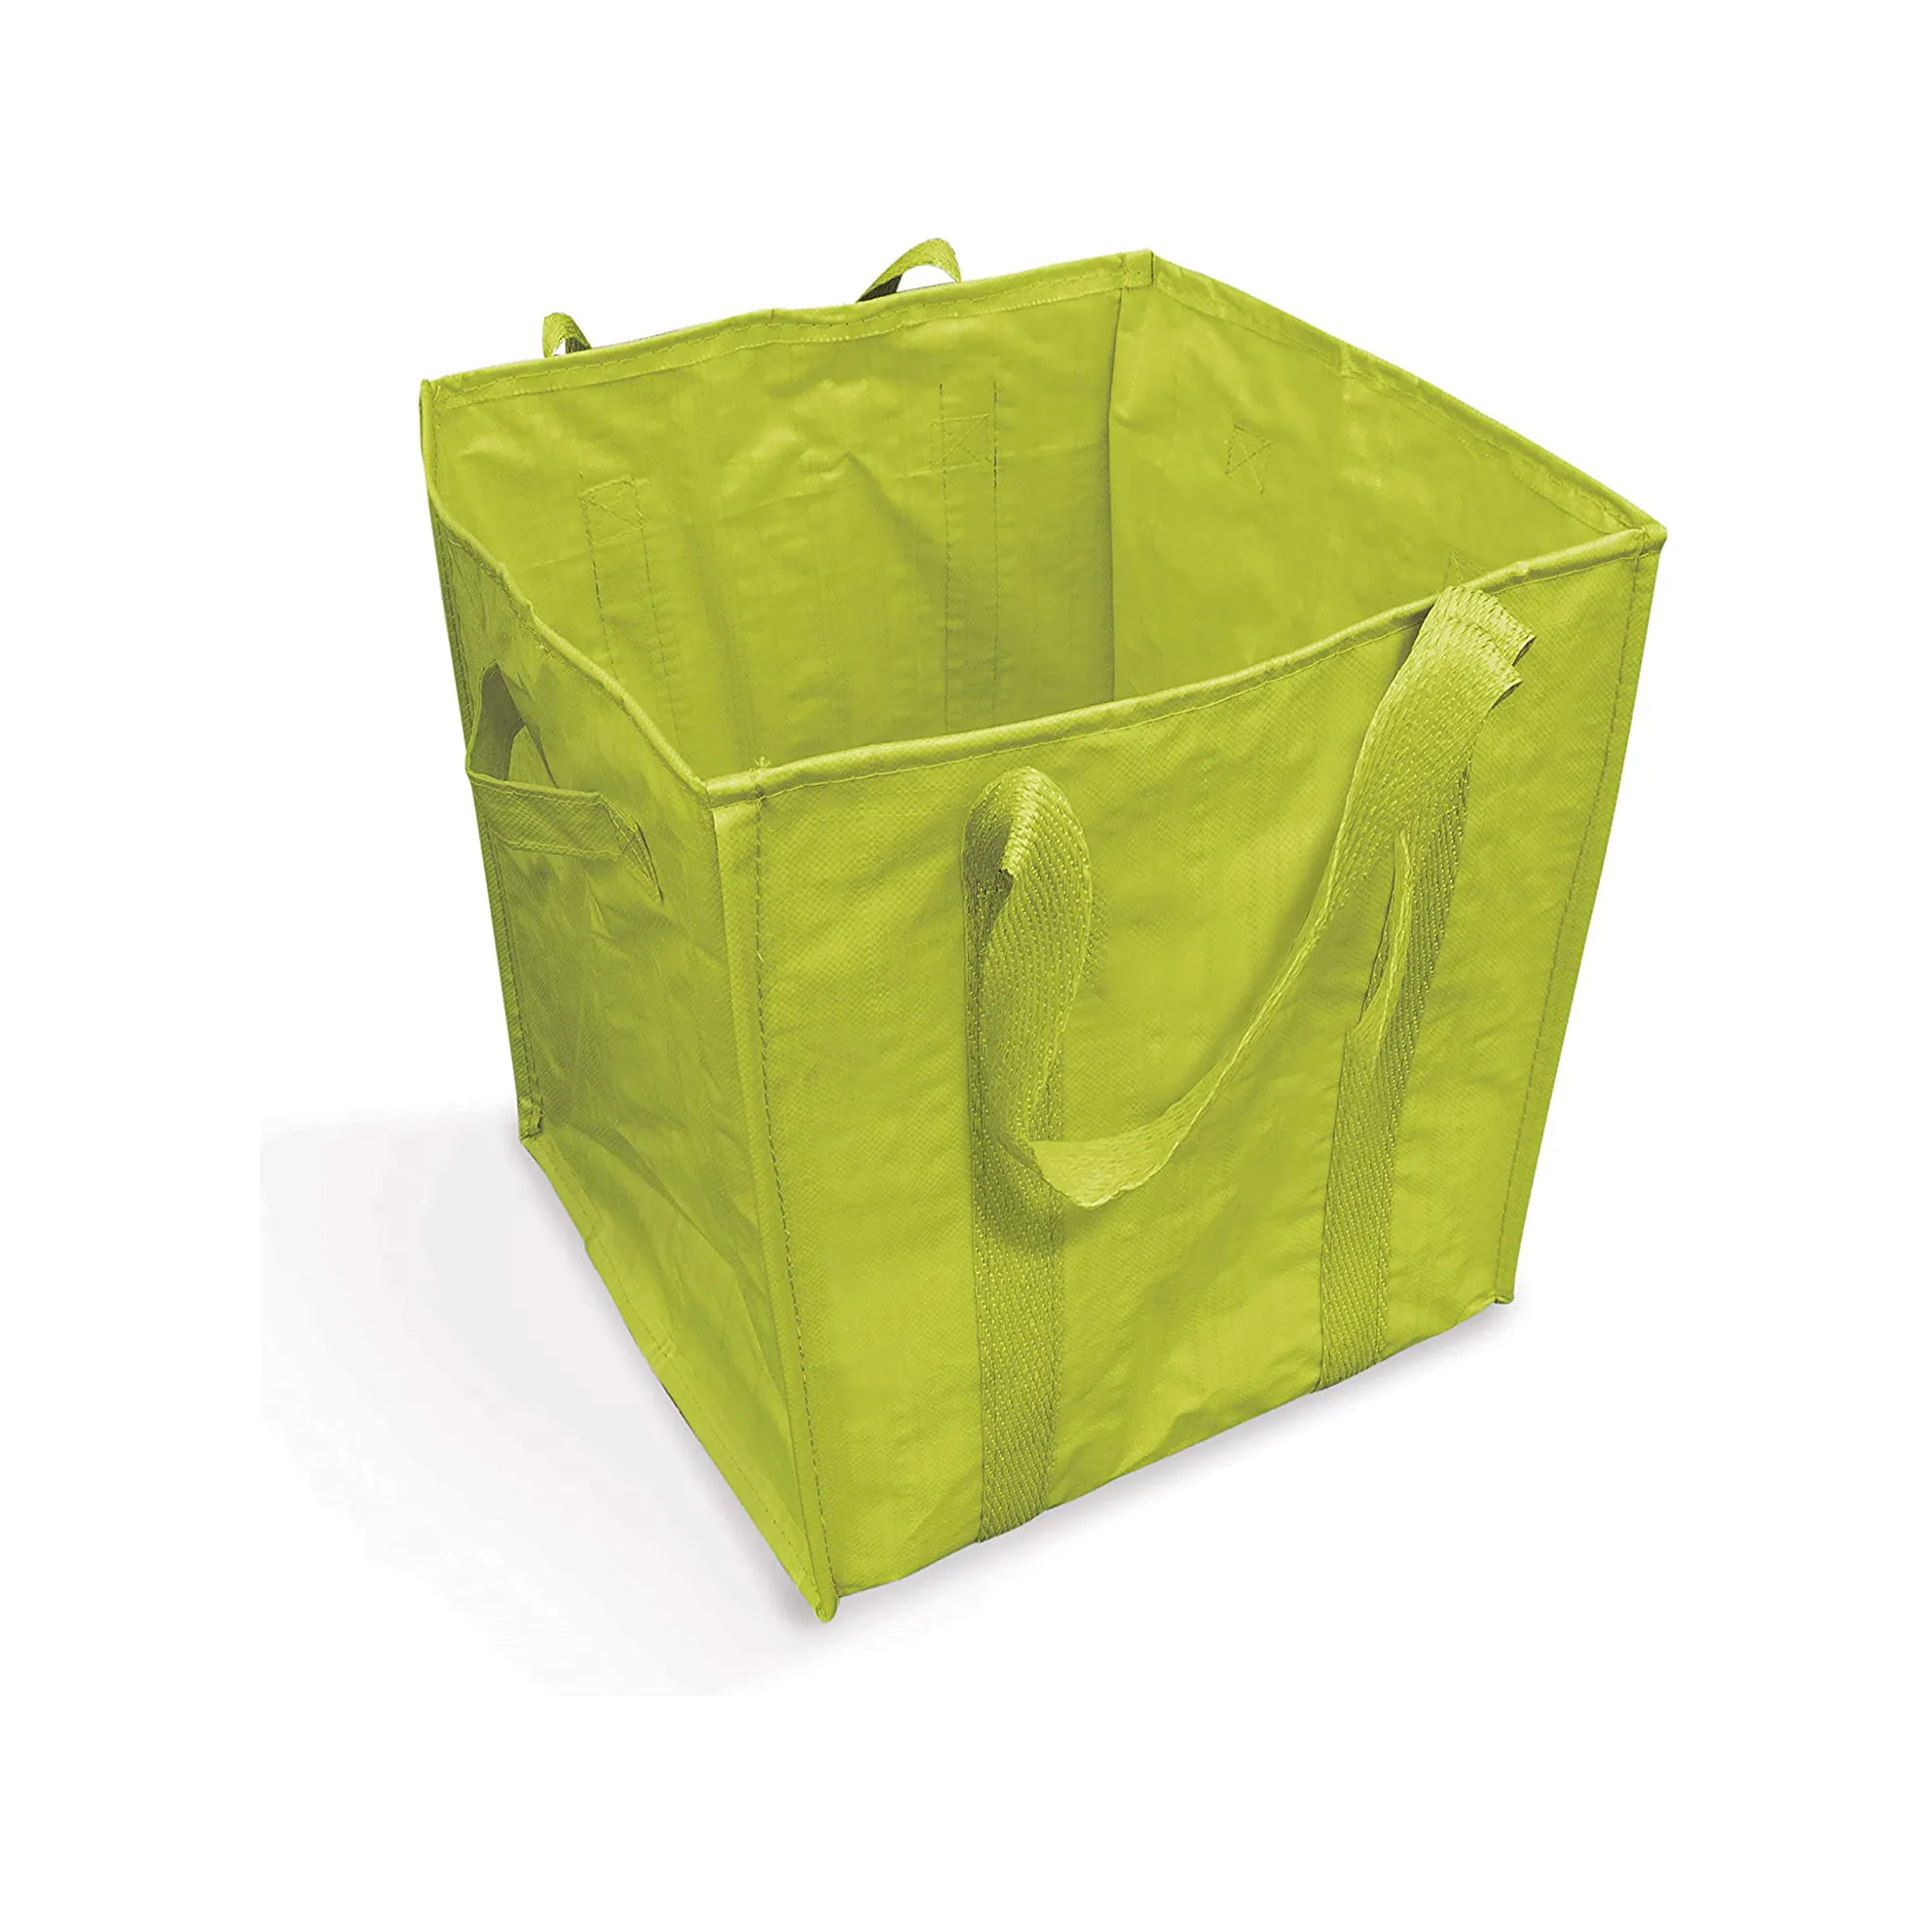 Сверхпрочная универсальная зеленая полипропиленовая Плетеная садовая сумка Ruthbag с листьями и мусором, с усиленными ручками, швами и плечевыми ремнями